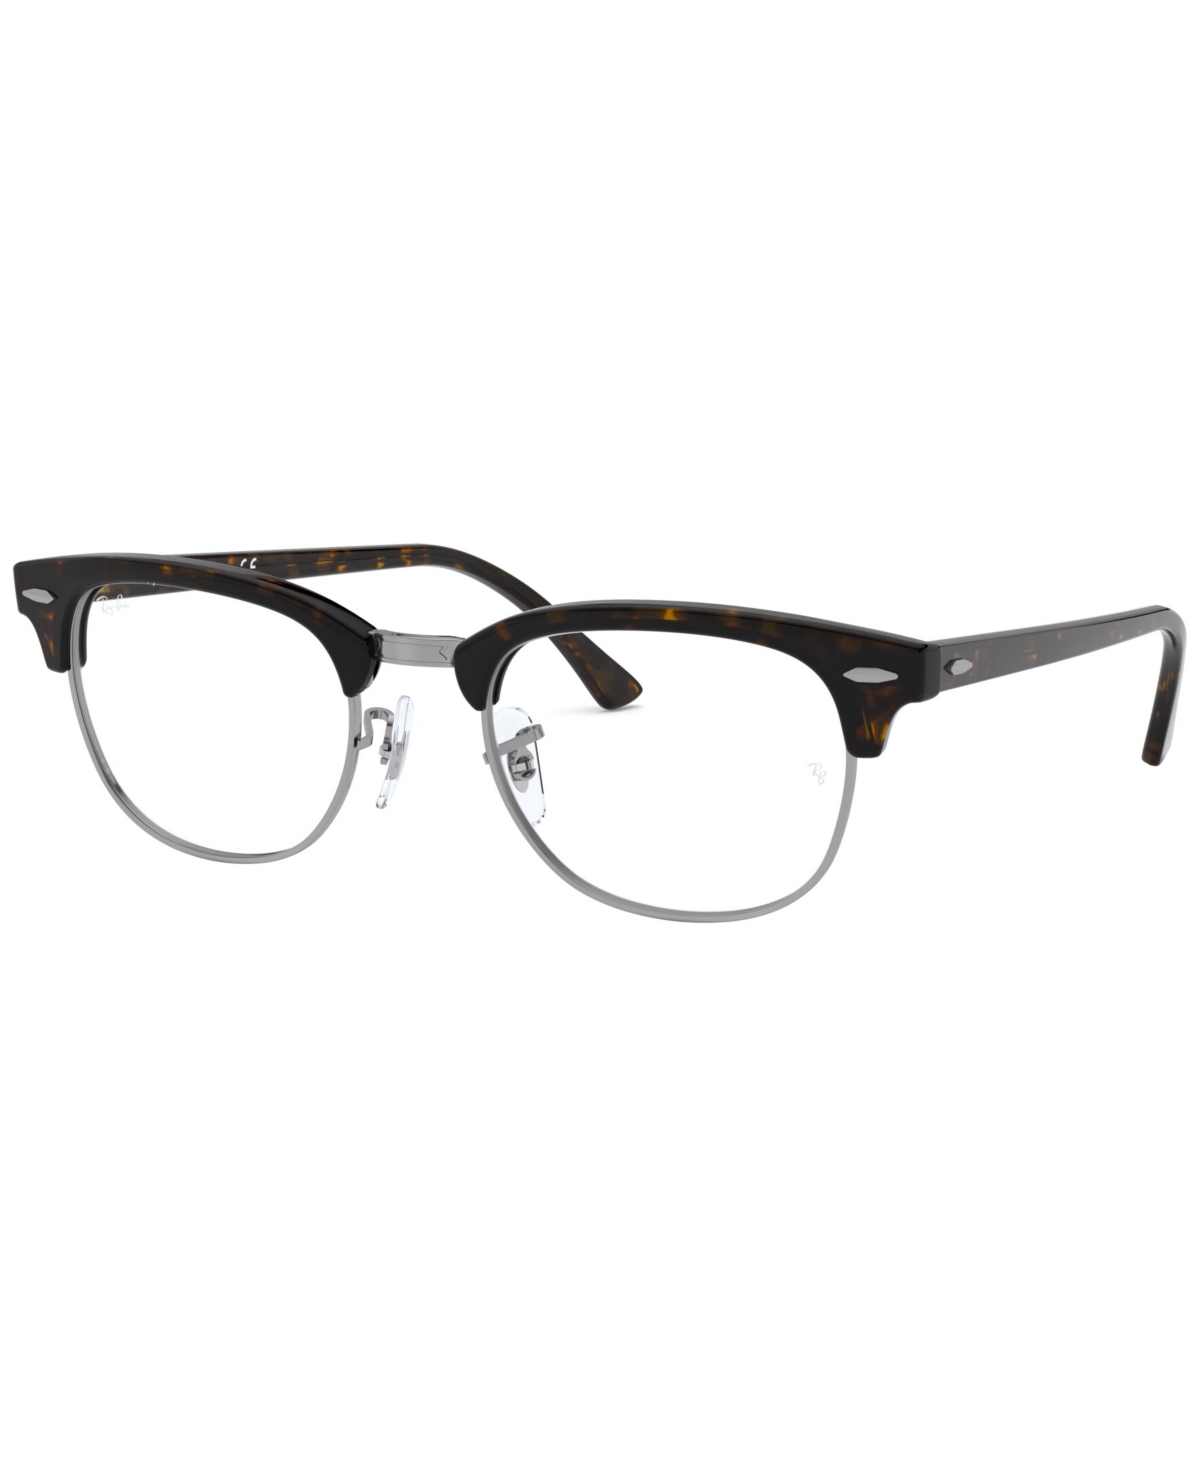 RX5154 Unisex Square Eyeglasses - Transparent